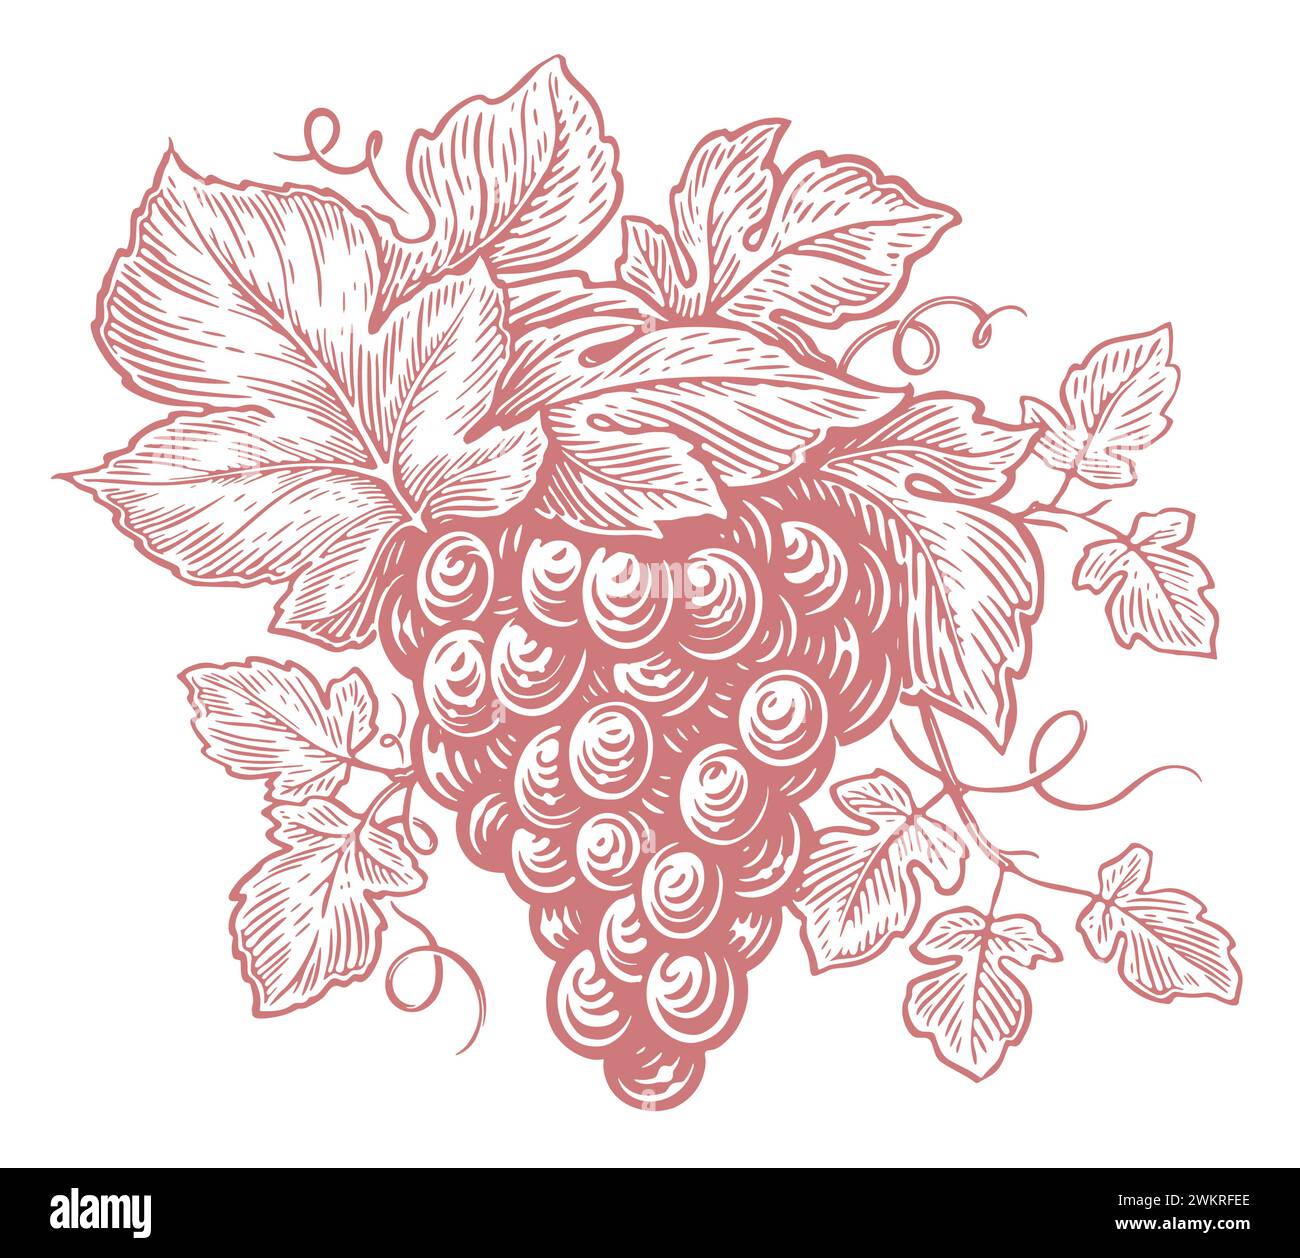 Grappolo di uva fresca. Vite disegnata a mano con foglie e frutti di bosco. Disegnare un'illustrazione vettoriale vintage Illustrazione Vettoriale